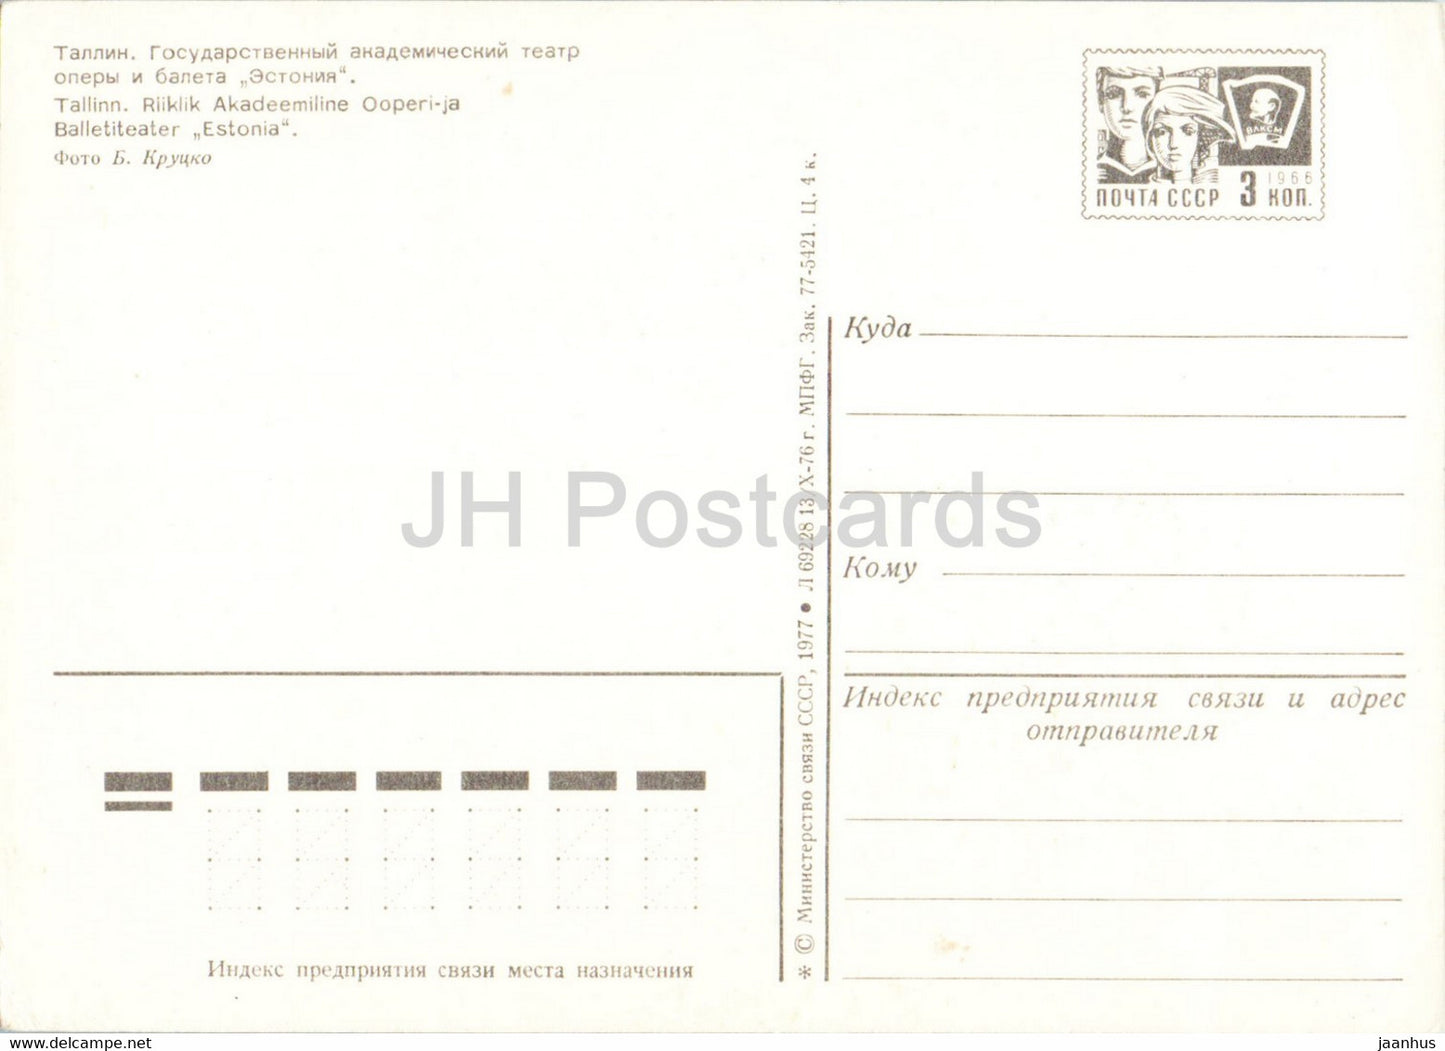 Tallinn - State Academic Opera and Ballet Theatre - postal stationery - 1977 - Estonia USSR - unused